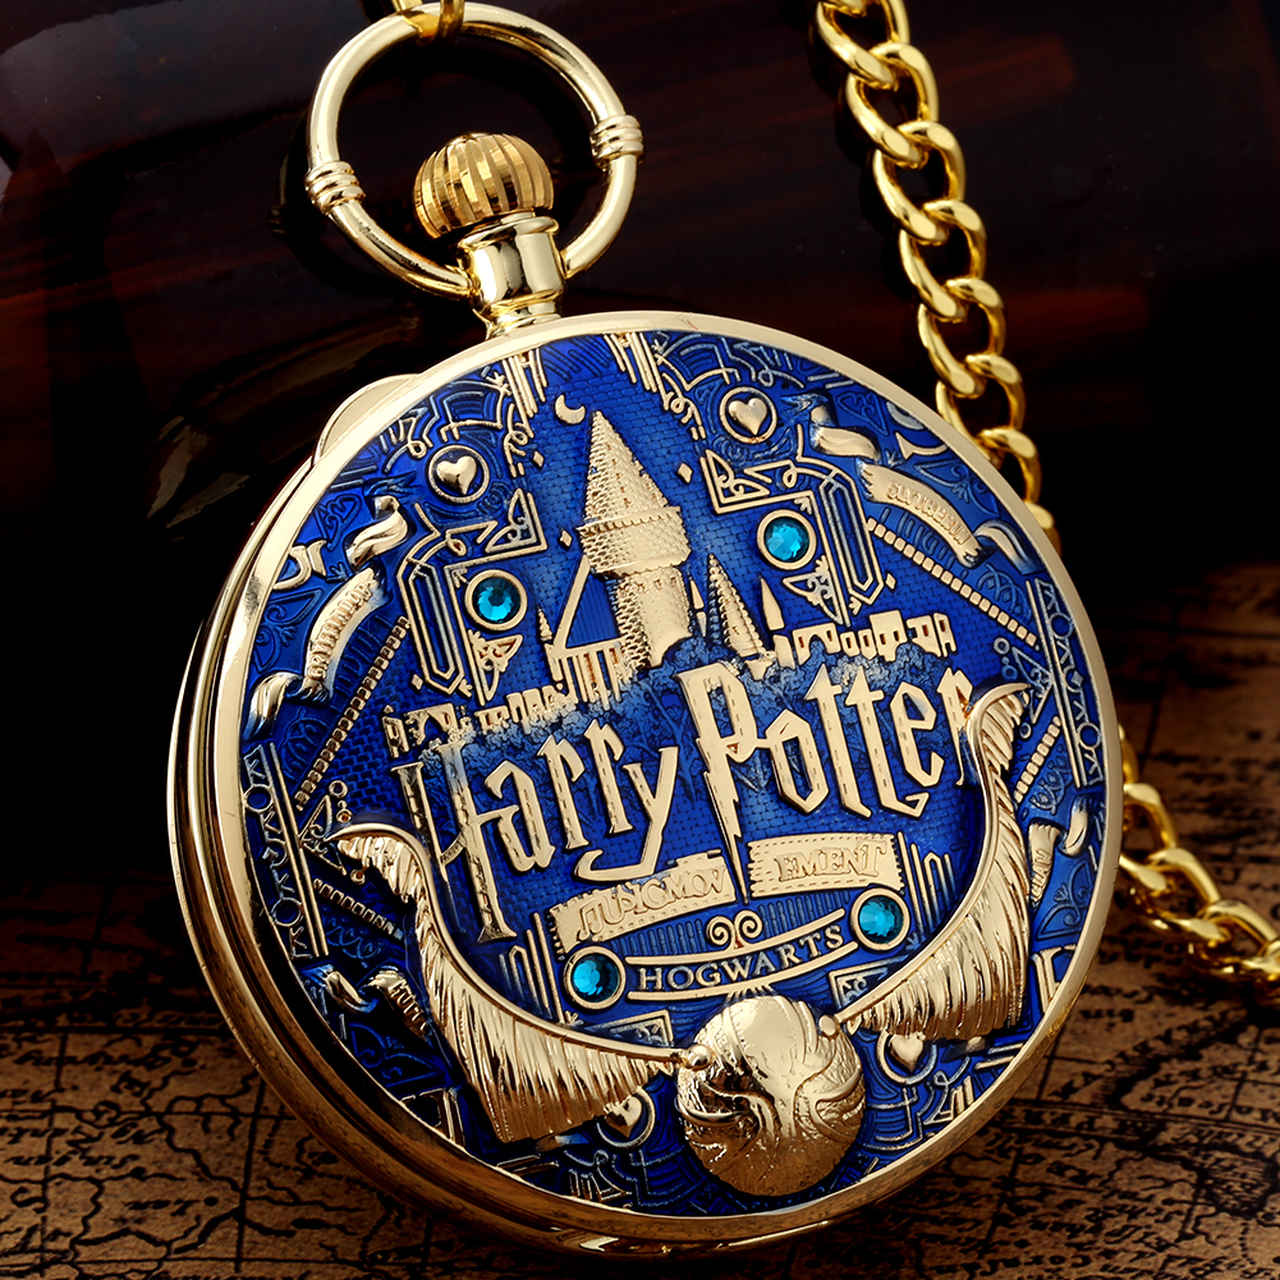 Relógio de Bolso e Caixinha de Musica Brasão Hogwarts: Corvinal Ravenclaw  Pomo de Ouro Harry Potter Dourado e Azul - MKP - Toyshow Tudo de Marvel DC  Netflix Geek Funko Pop Colecionáveis